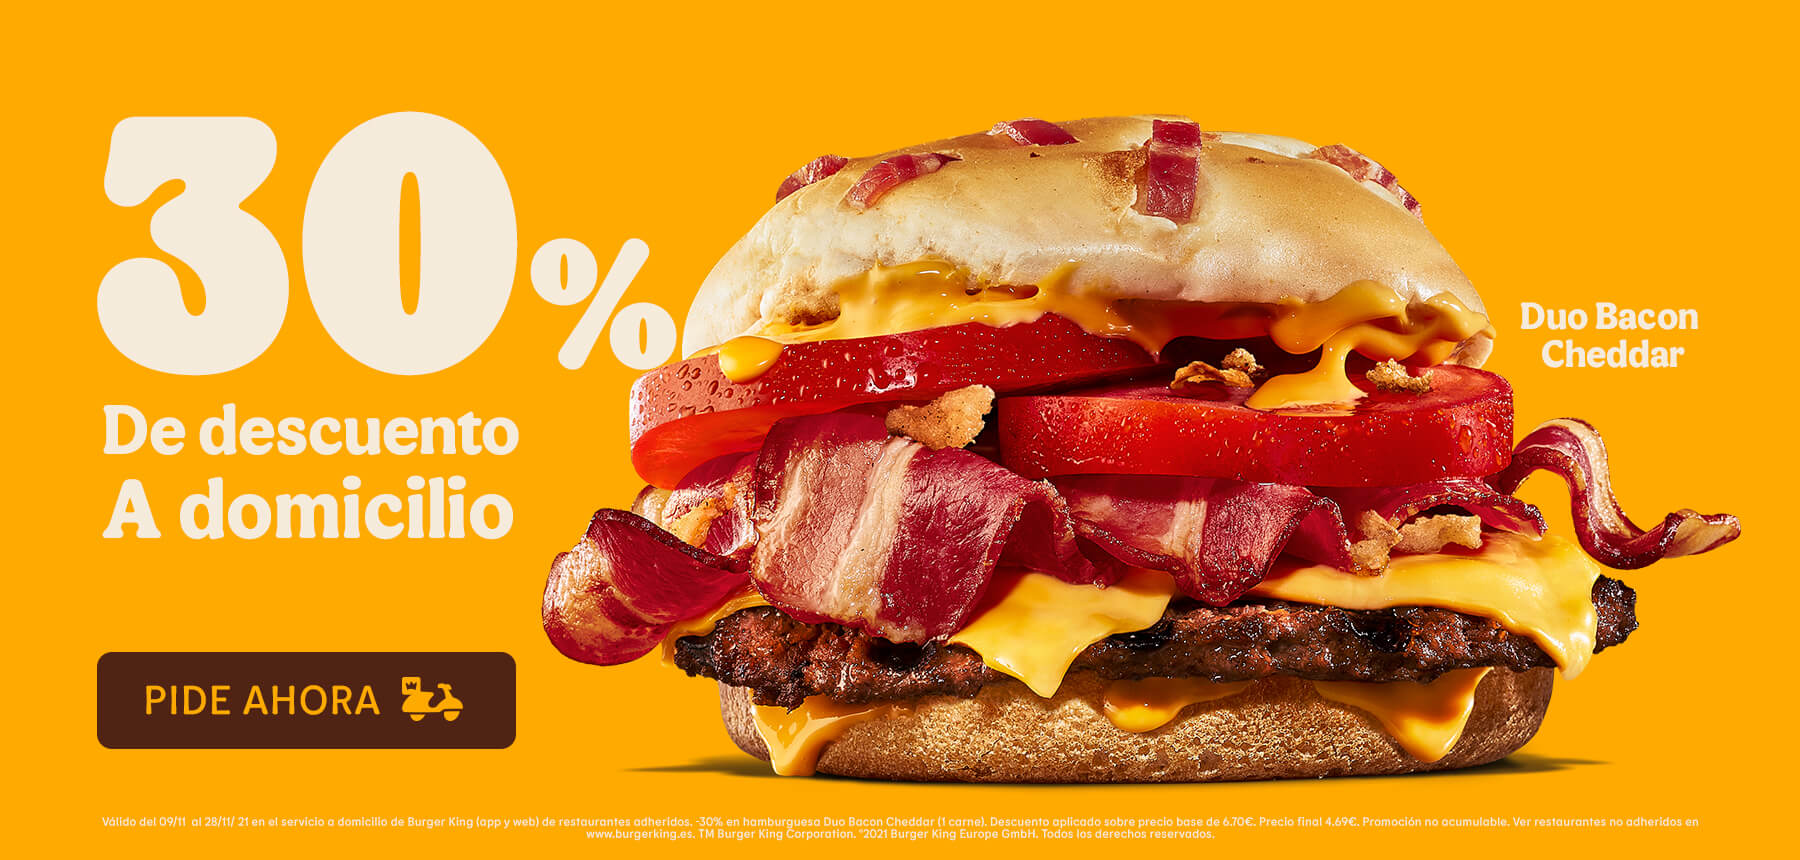 Hamburguesa Duo Bacon Cheddar (1 carne) por 4,69€ en pedidos en el servicio a domicilio de Burger King (app y web) (con descuento del 30% en el precio)